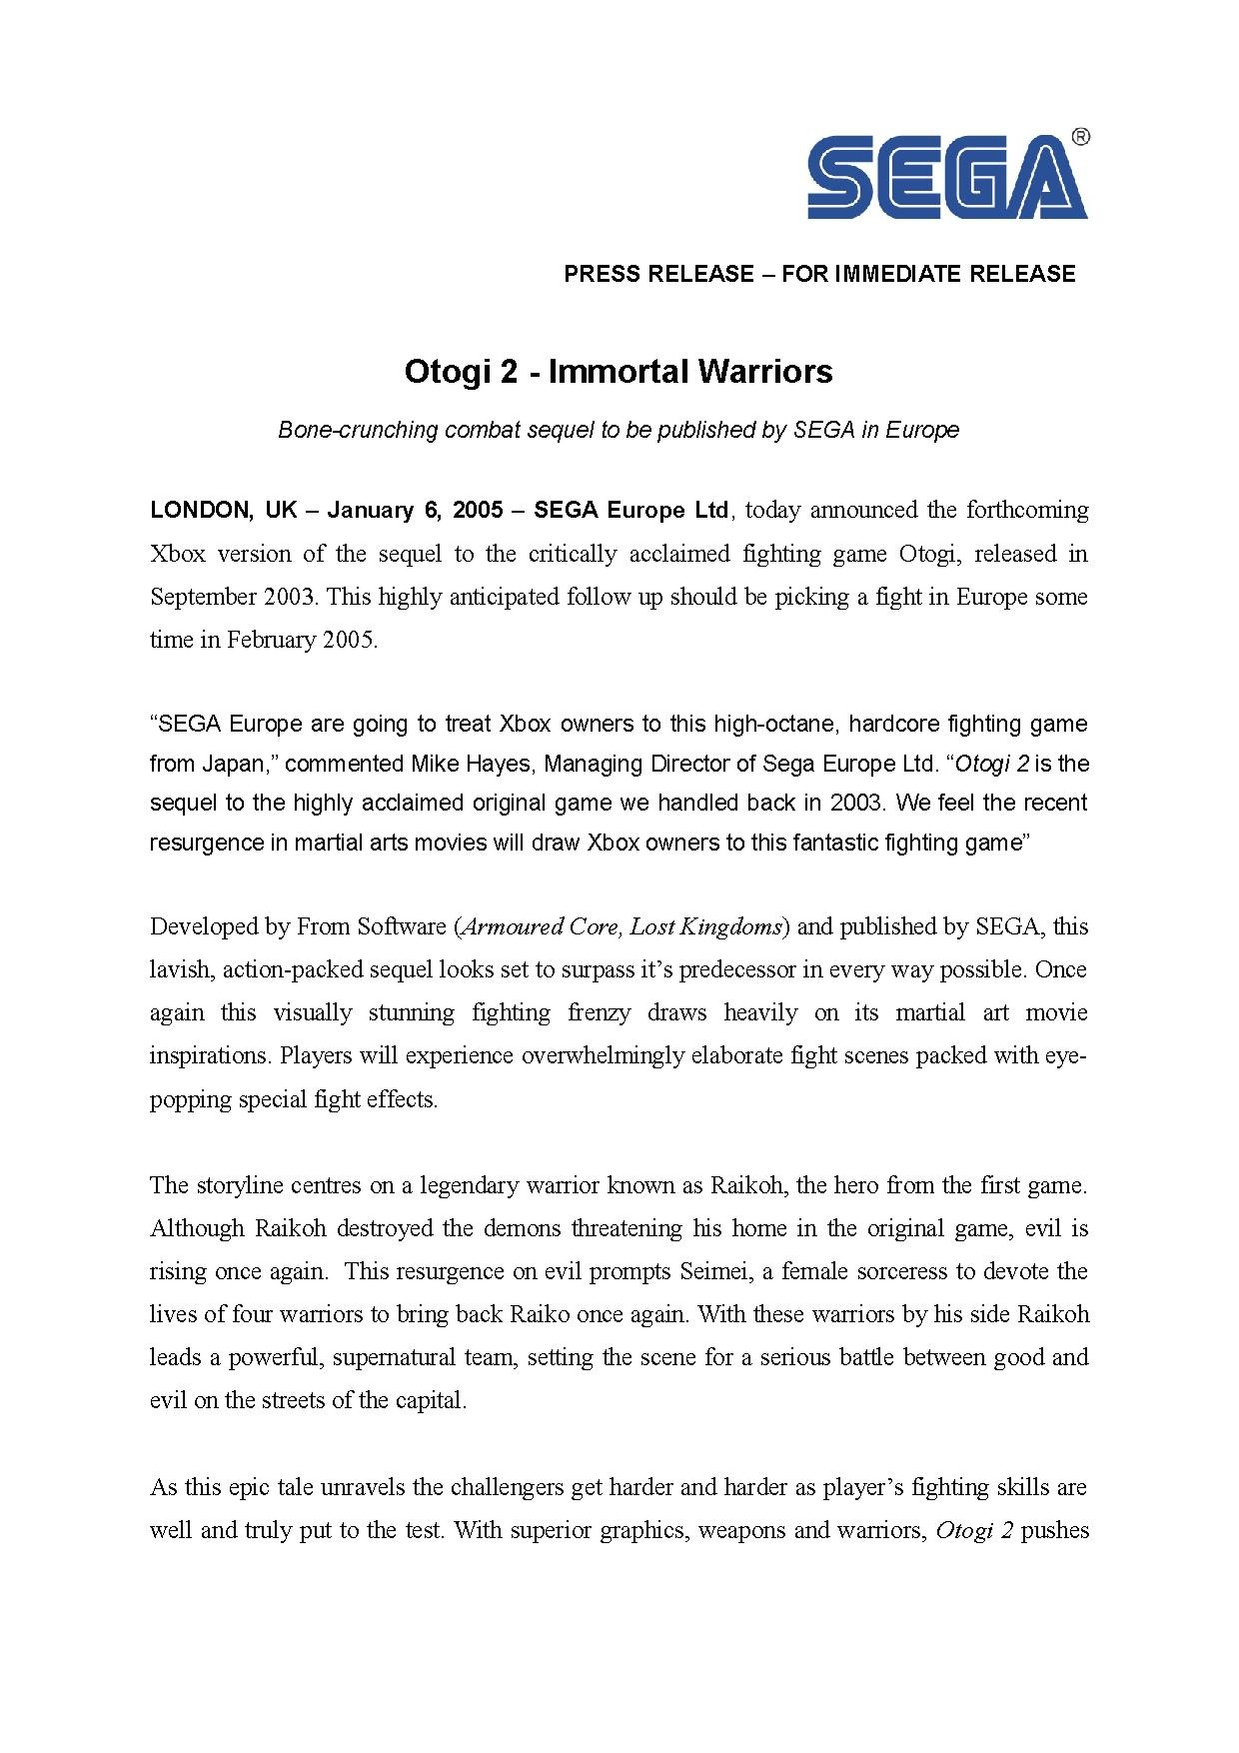 Otogi2 Announcement.pdf